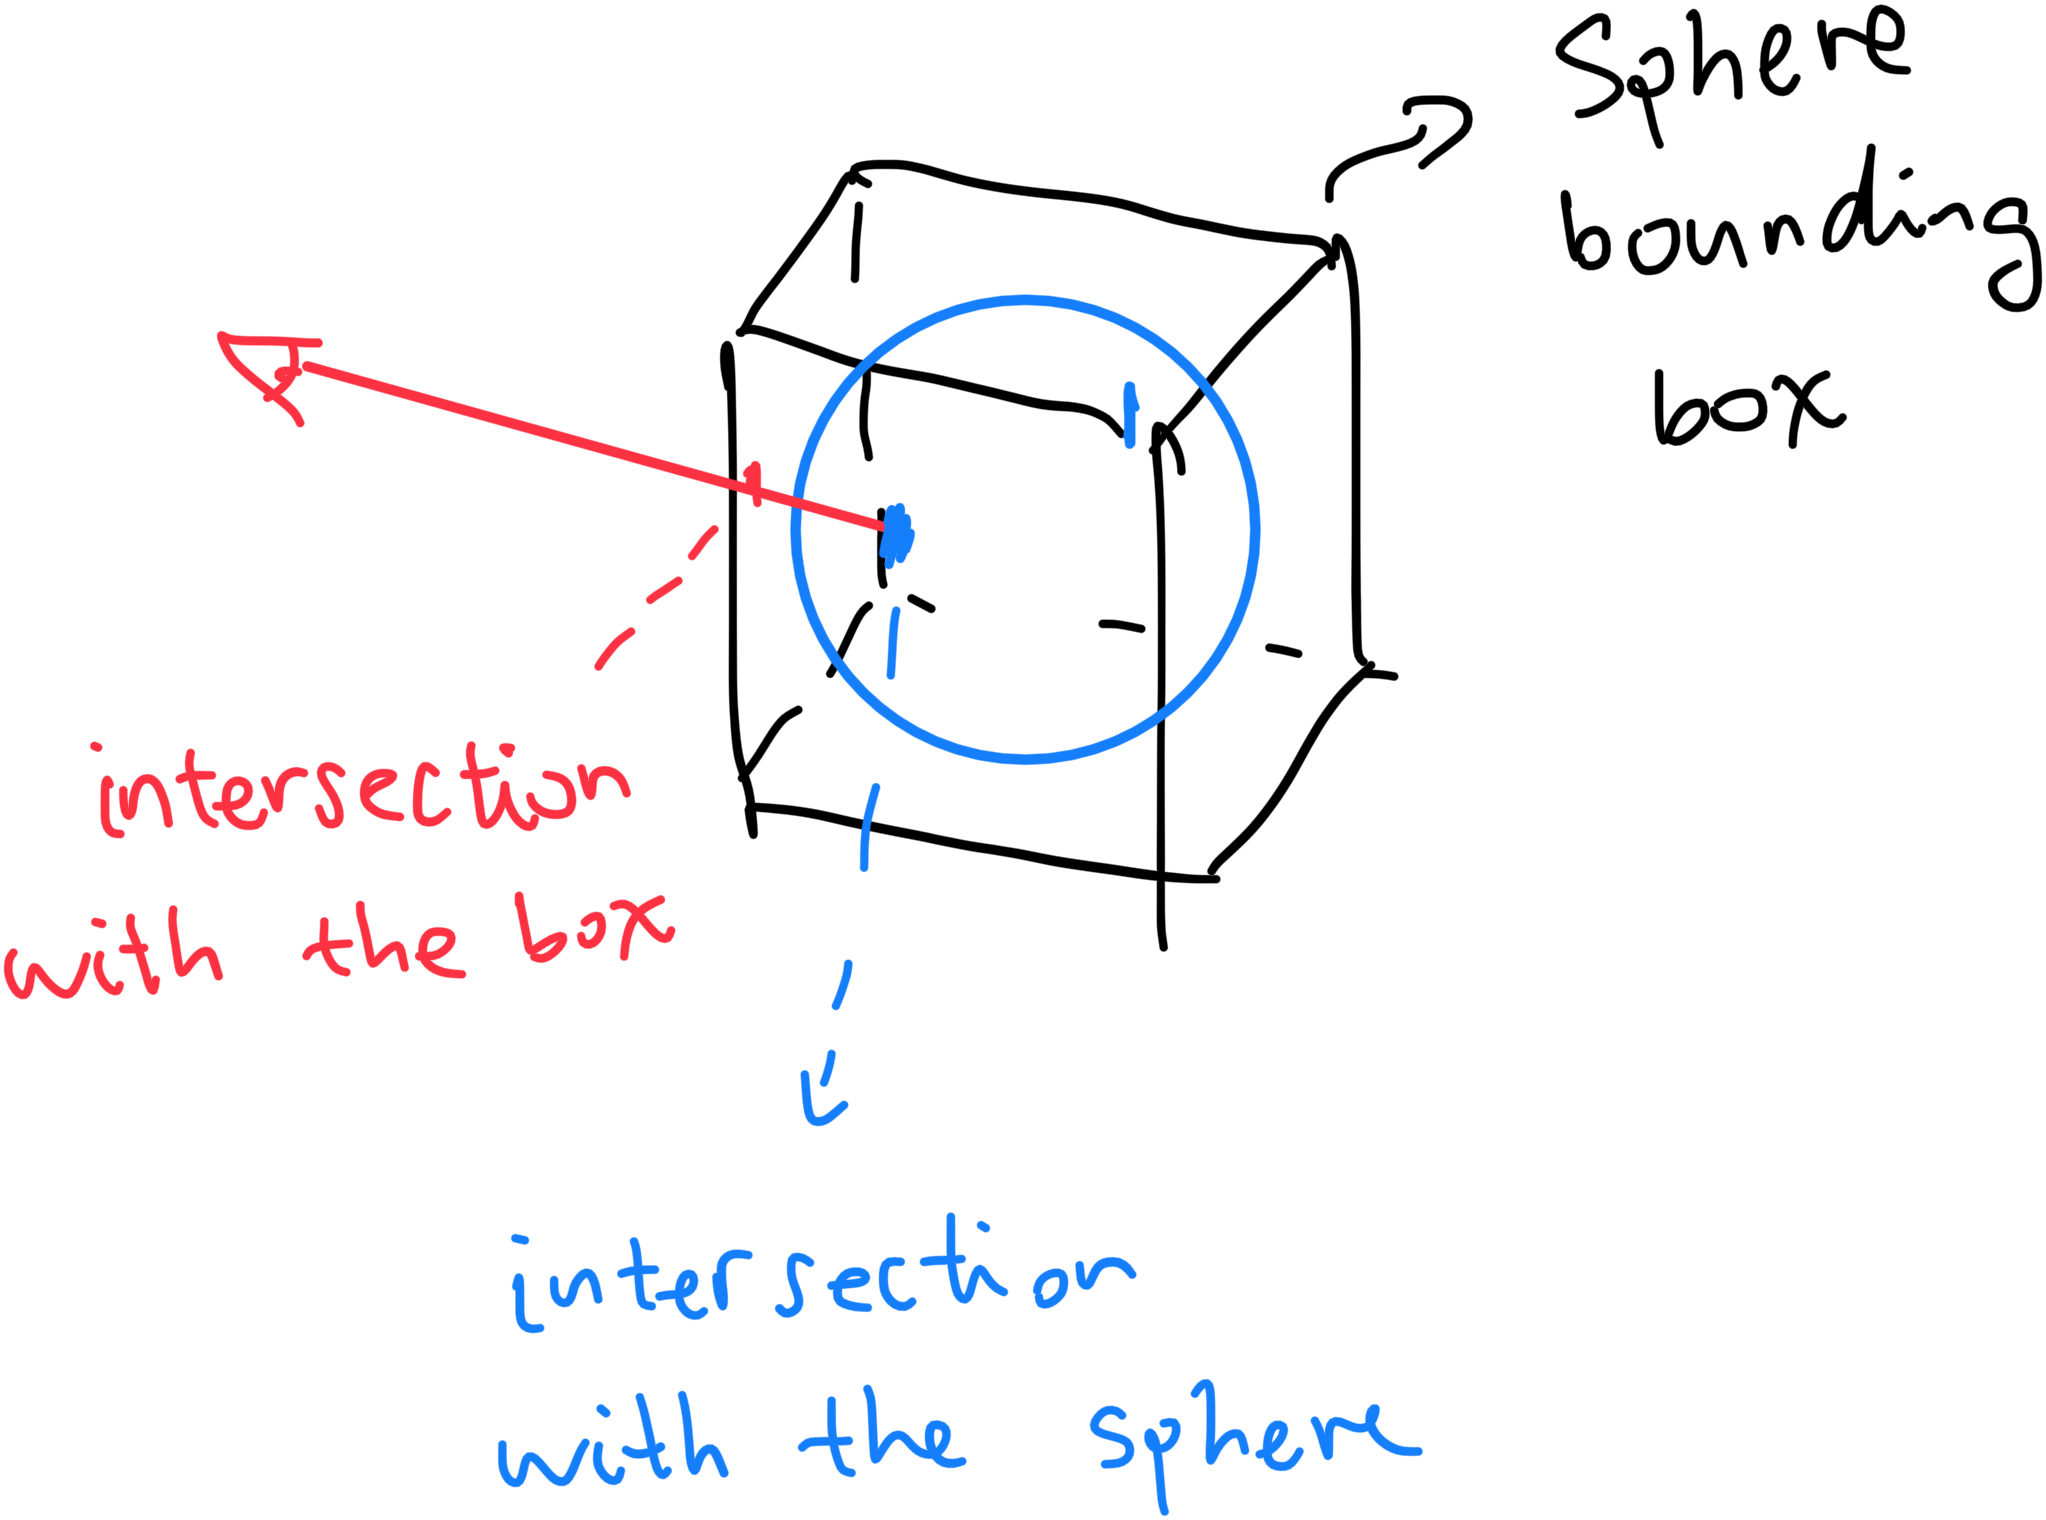 The spheretracing procedure